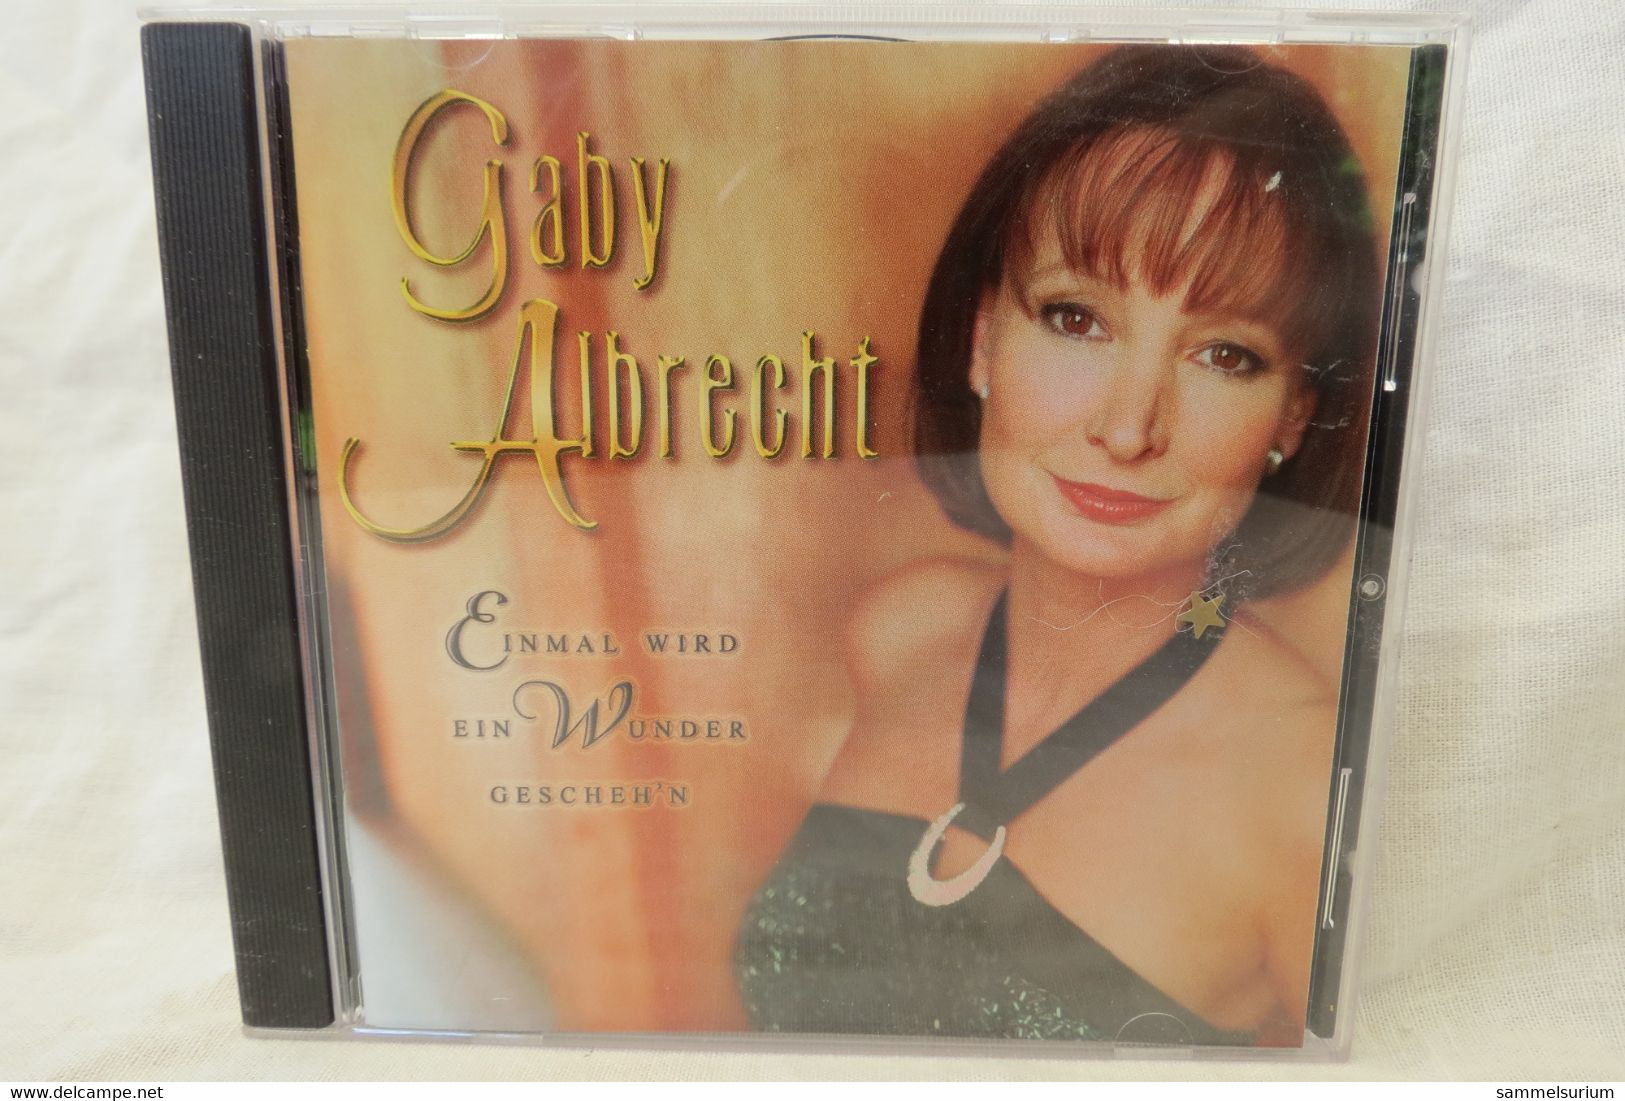 CD Gaby Albrecht "Einmal Wird Ein Wkunder Gescheh'n" - Other - German Music